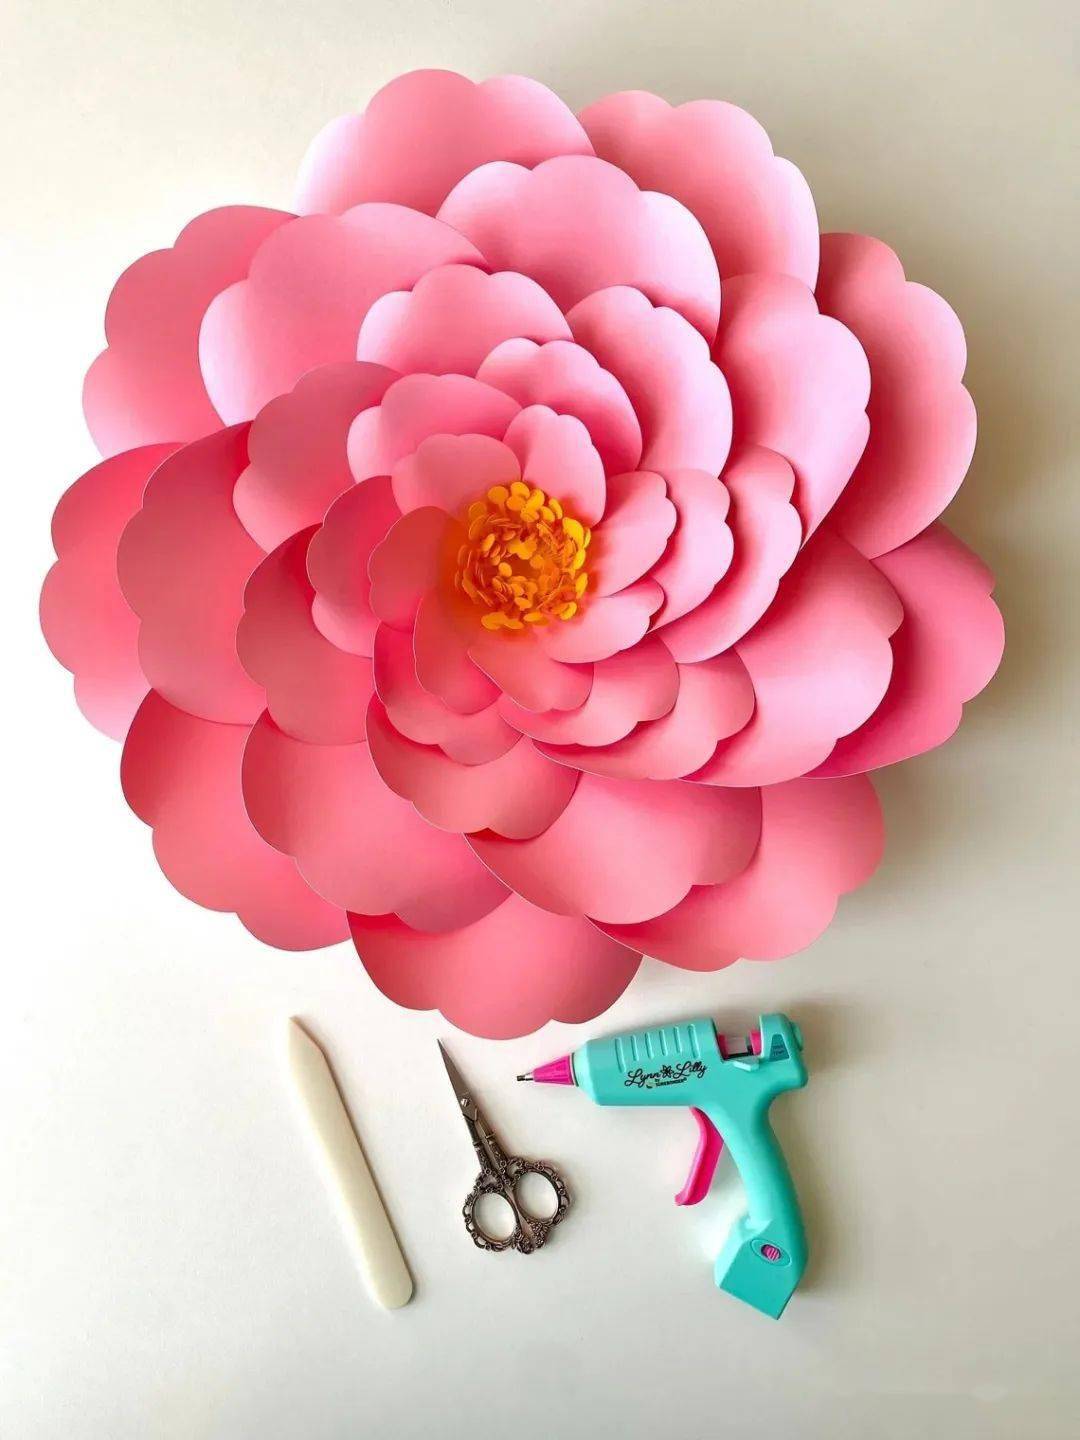 花朵换个方式只做一半更高级,几张彩纸剪剪再拼贴瞬间让你眼前一亮!